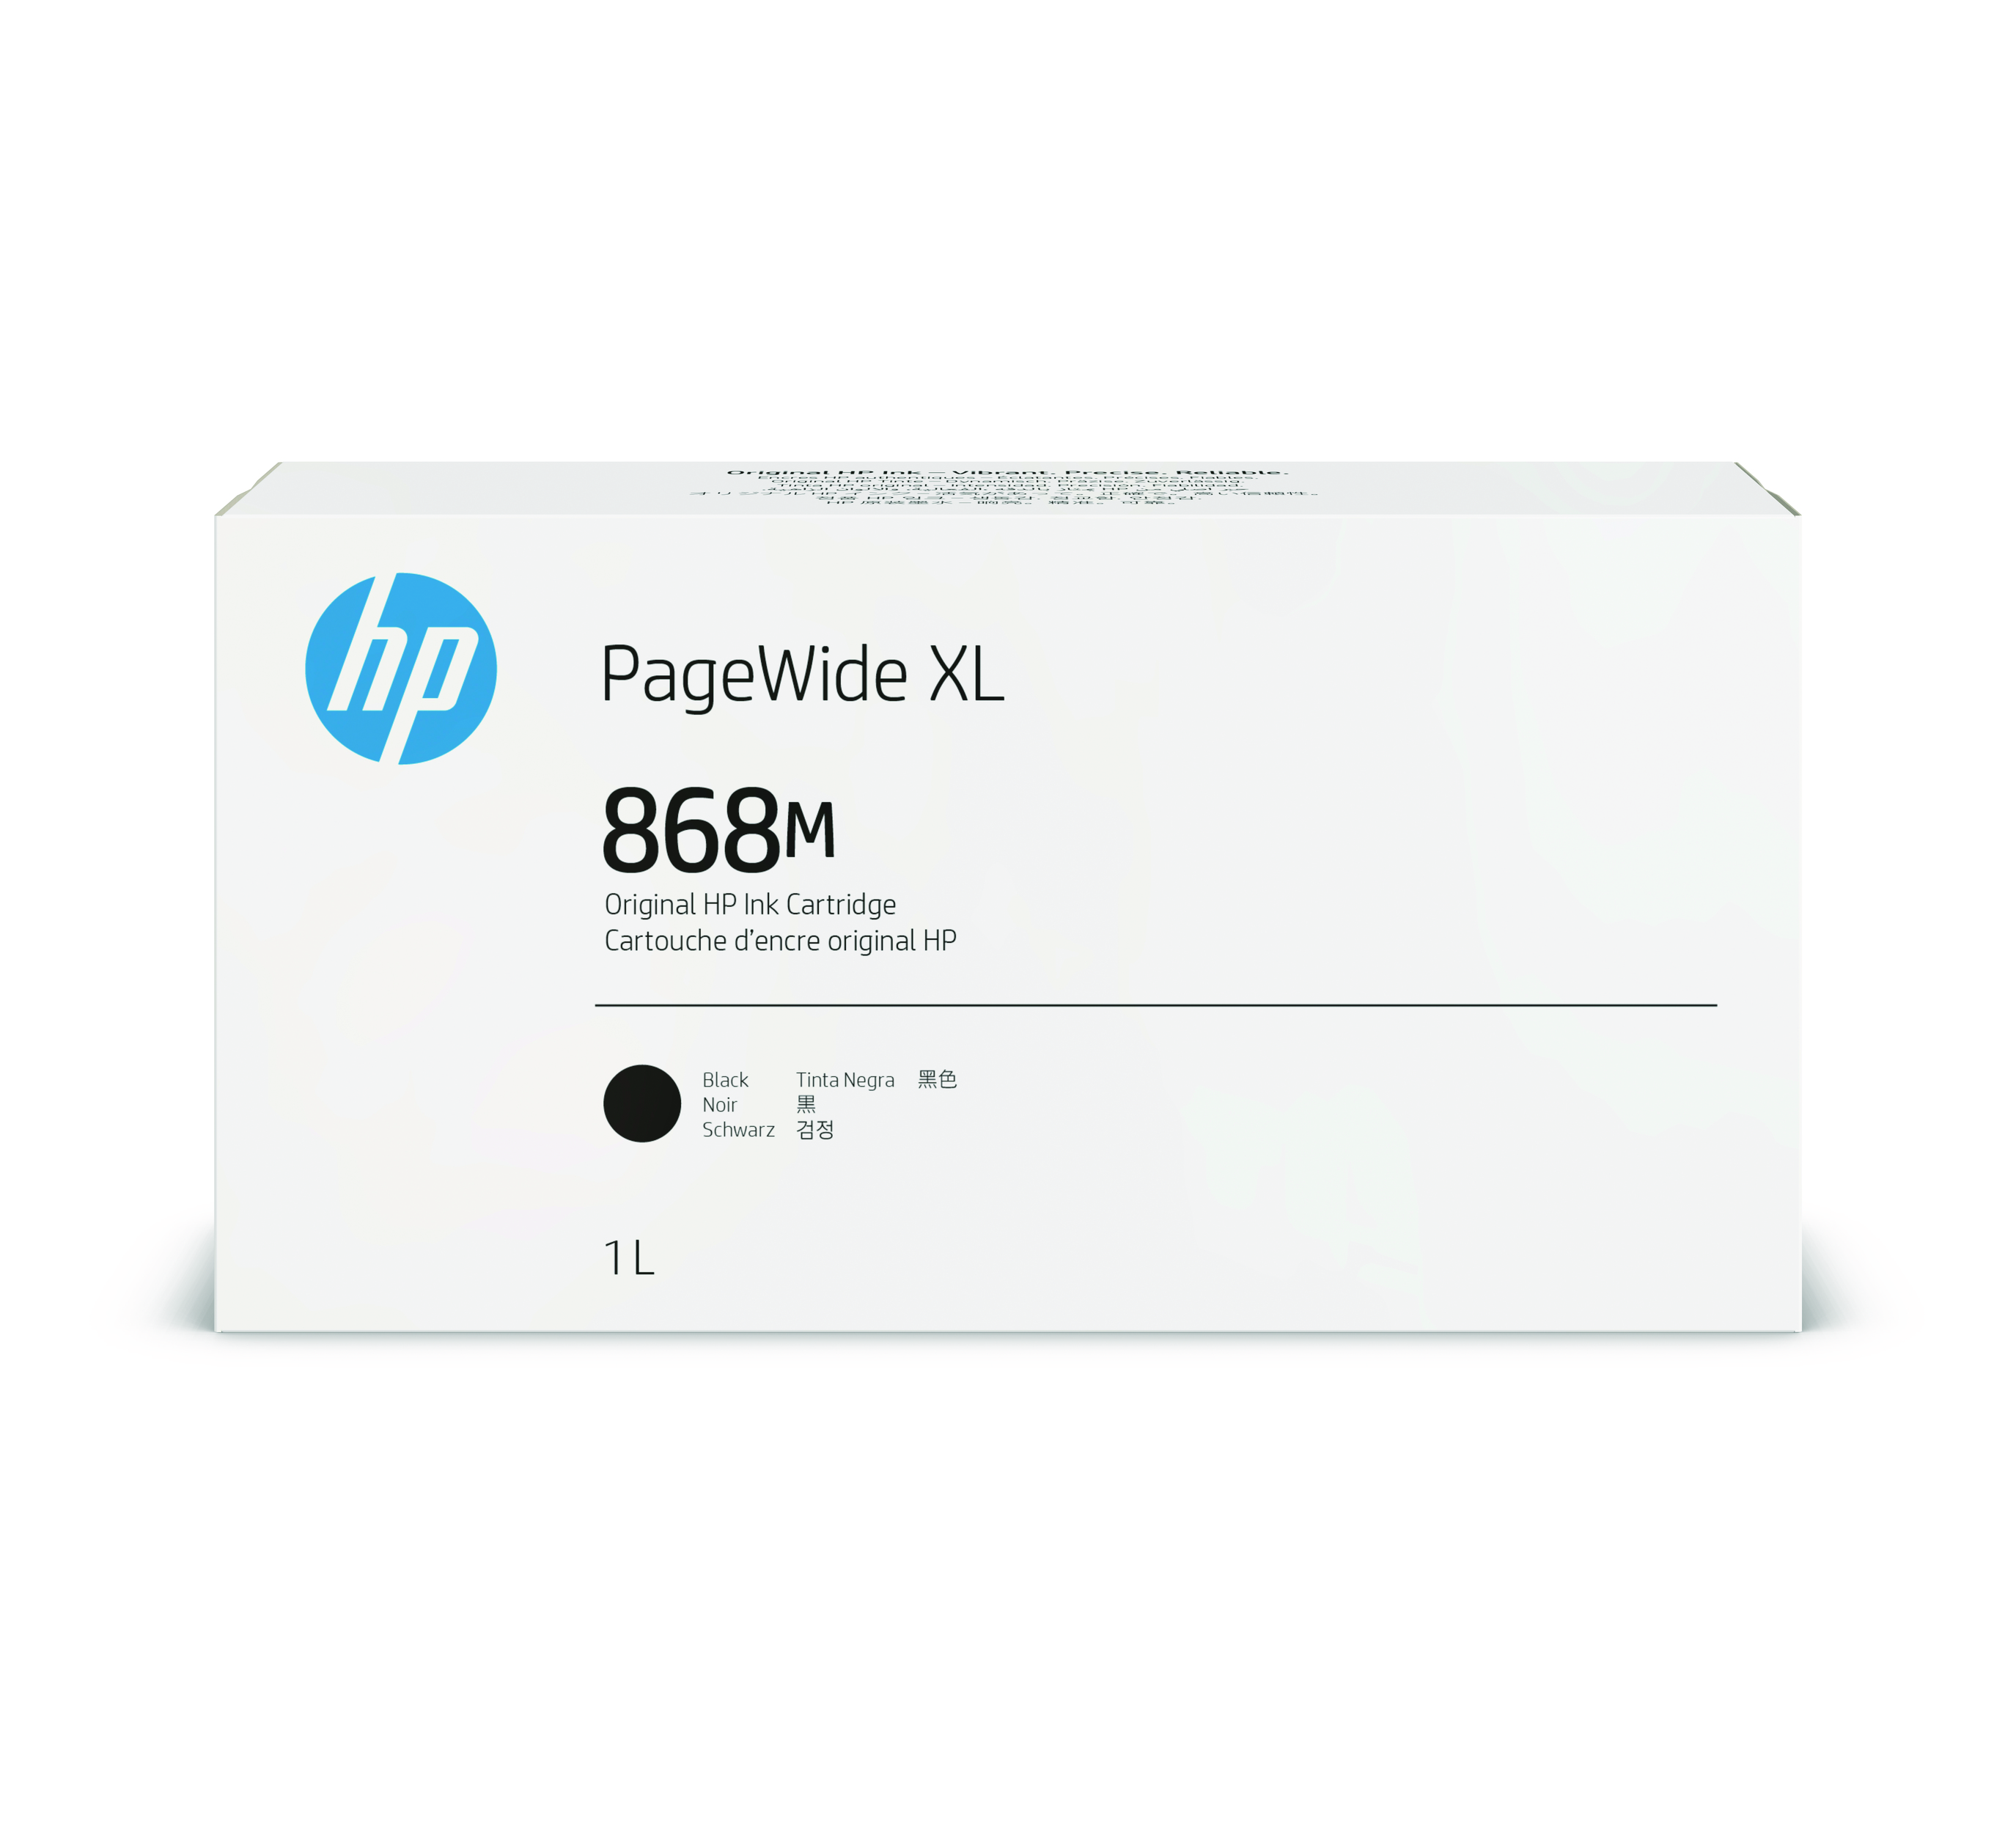 HP 868M PageWide Tinte XL Ink  schwarz - 1000 ml